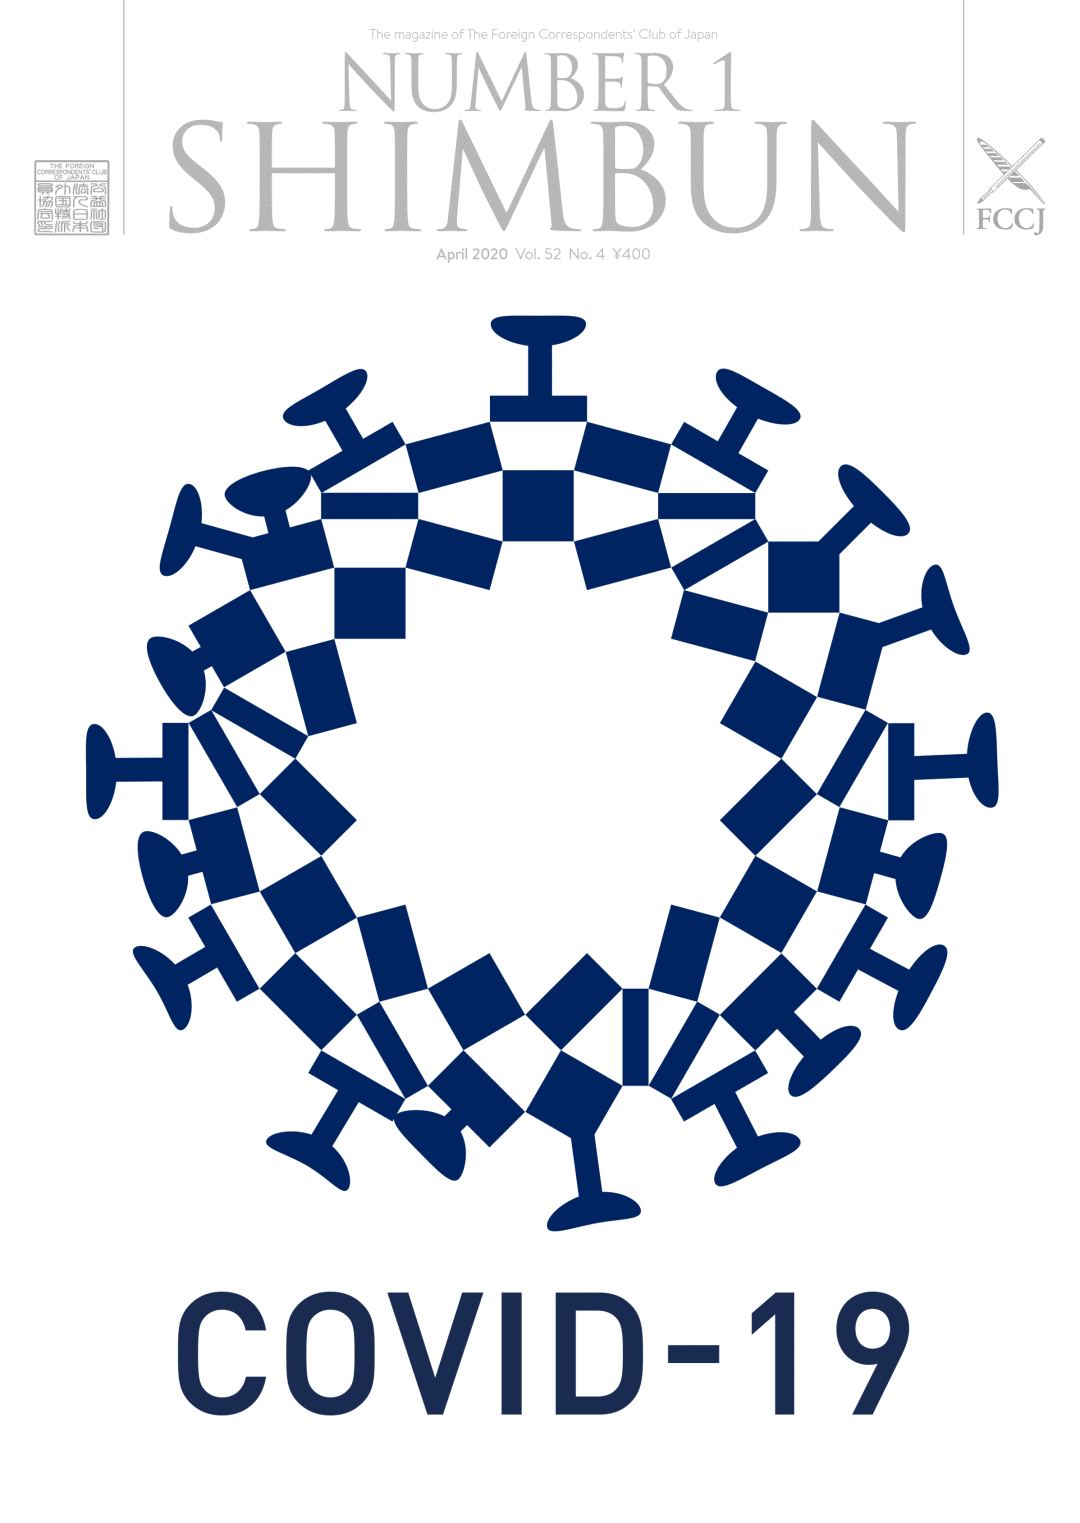 哈尔滨logo设计公司